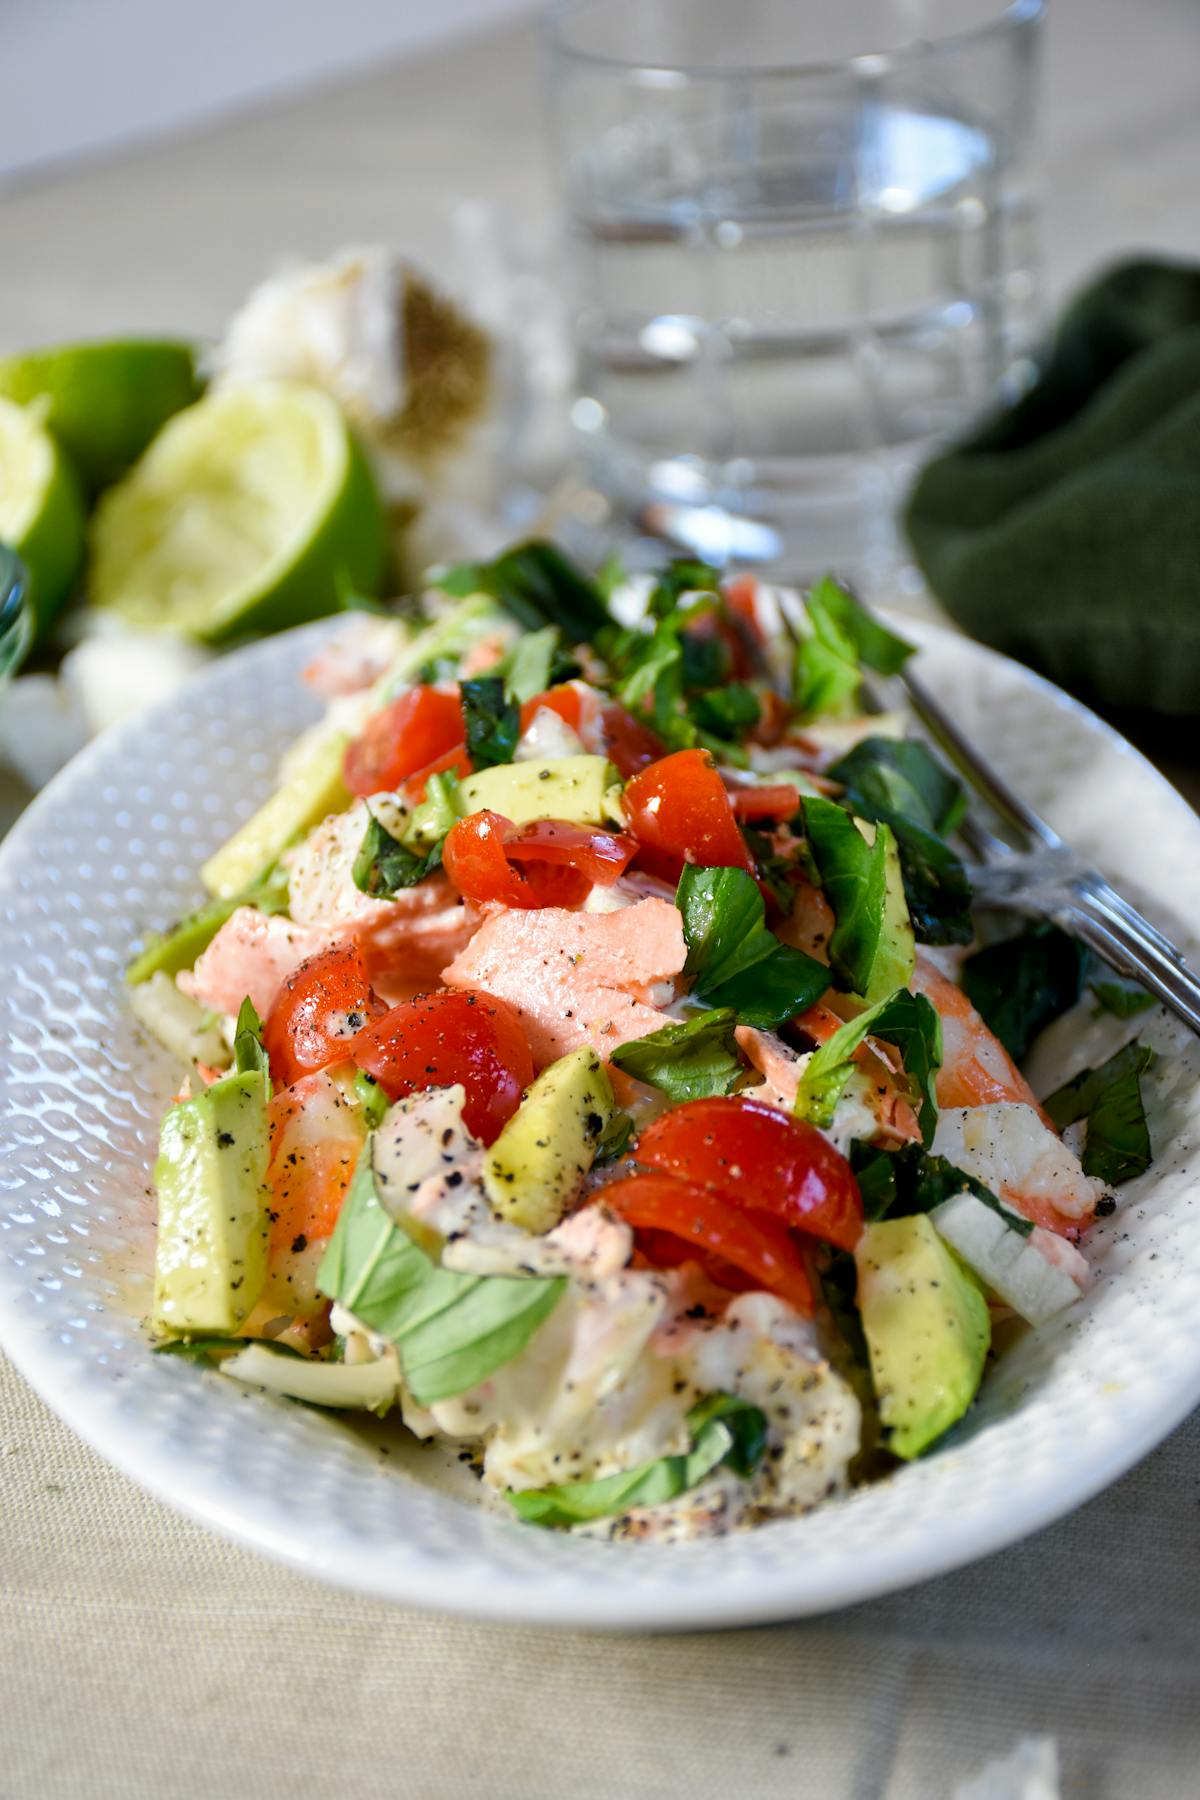 Seafood salad with avocado